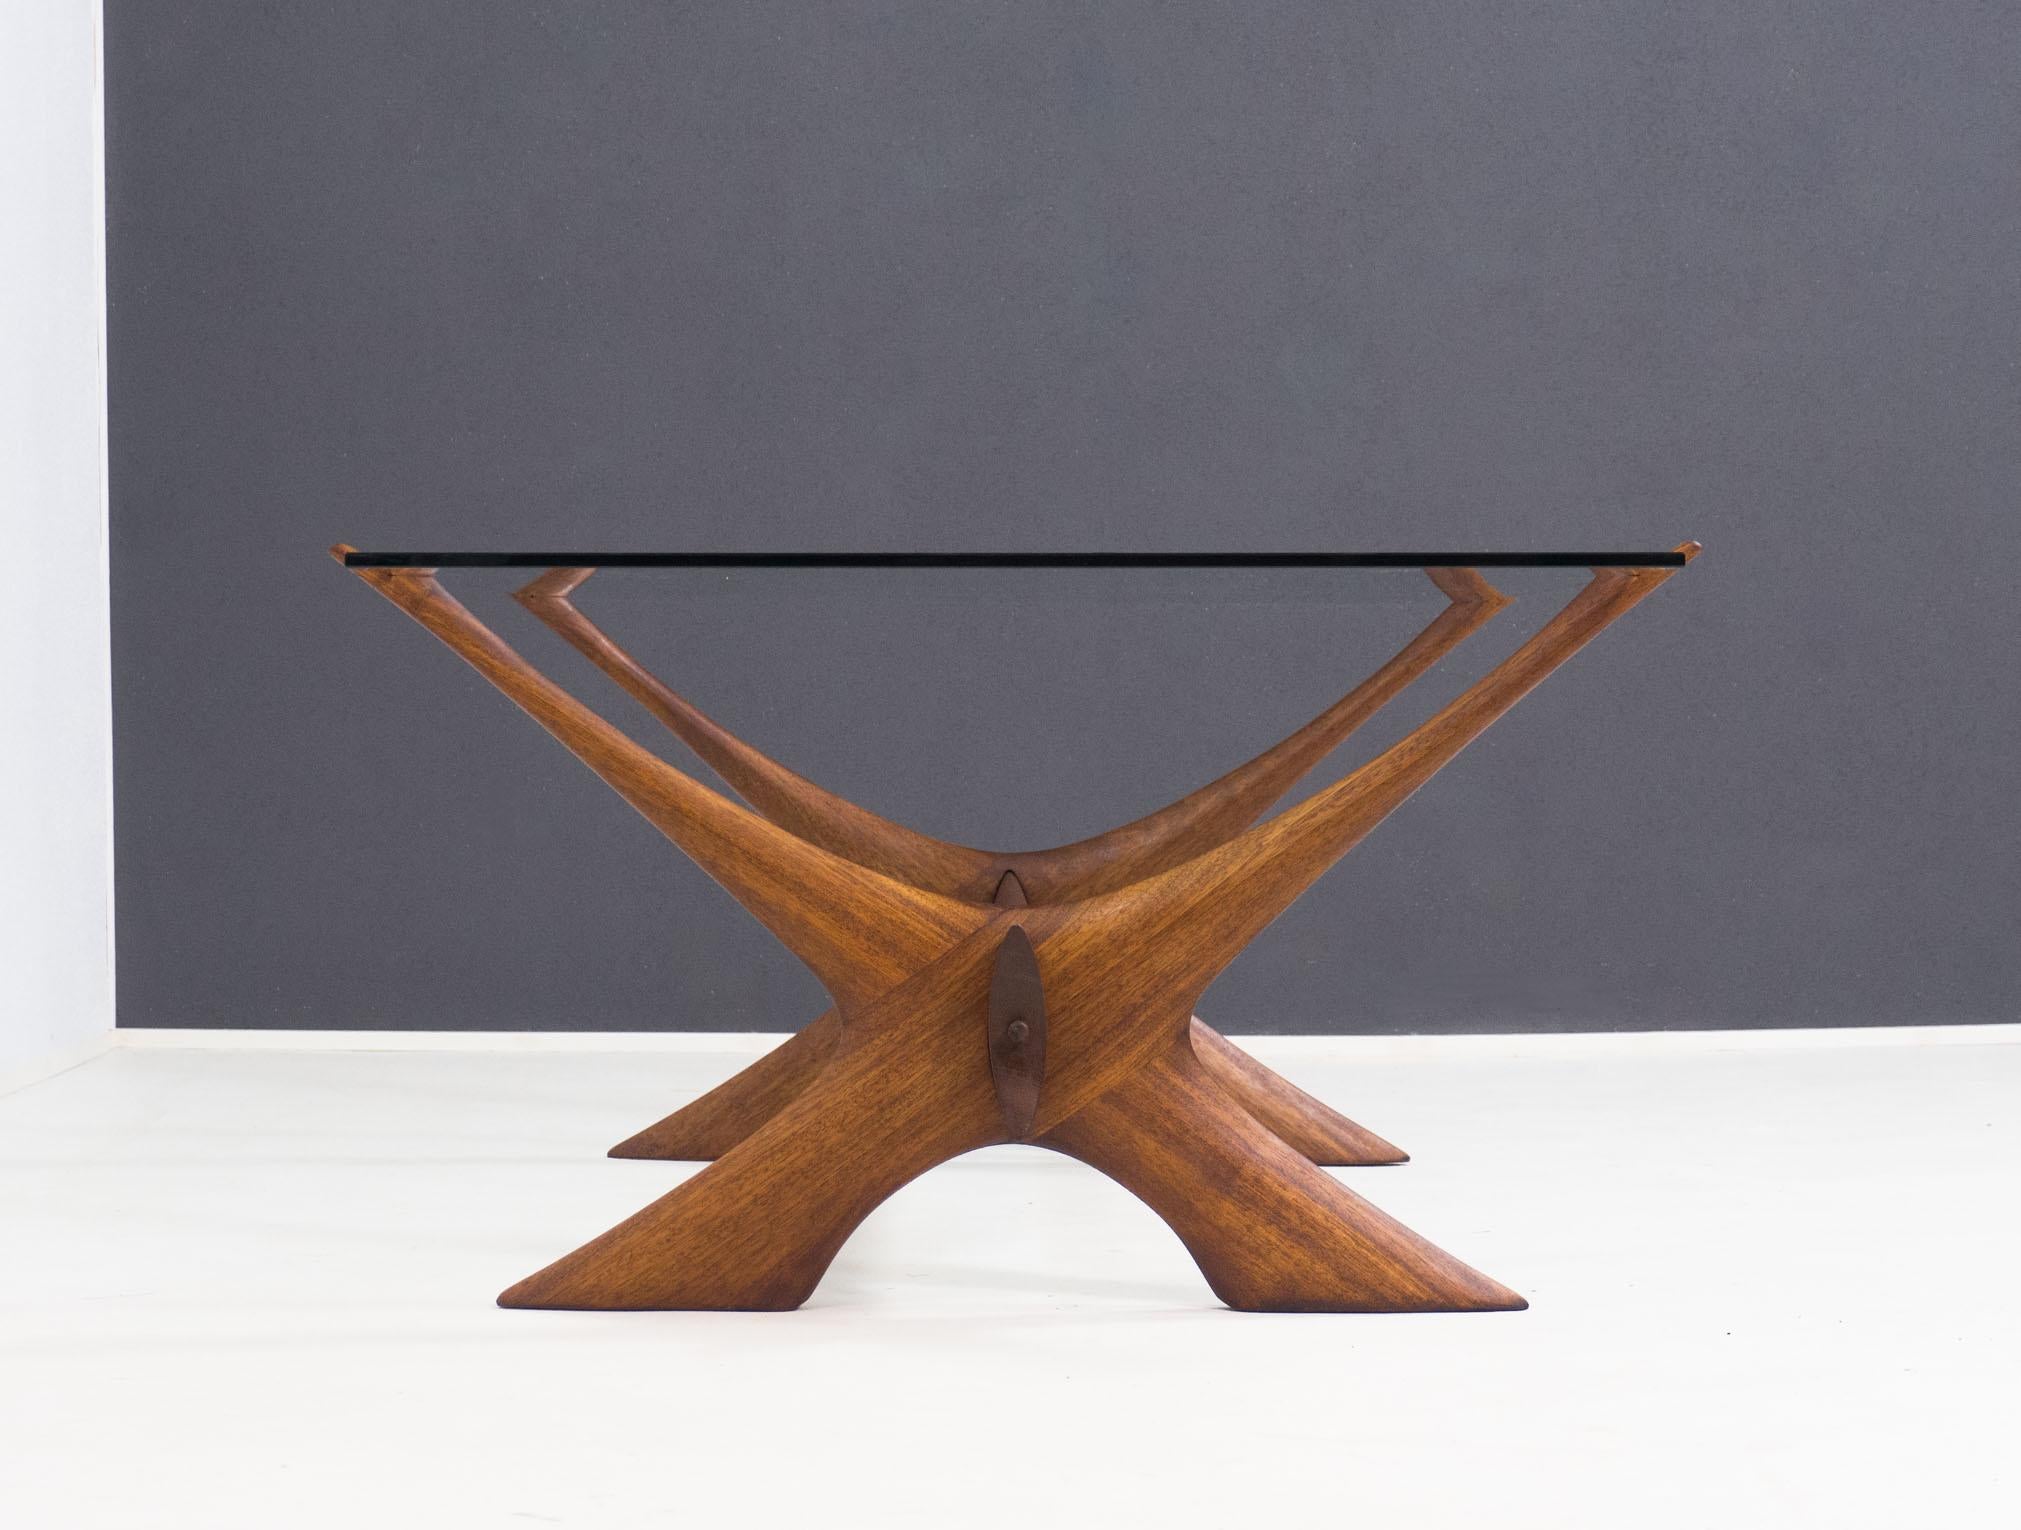 Impressionnante table basse conçue par Fredrik Schriever-Abeln et fabriquée par l'entreprise suédoise Örebro Glas dans les années 1960.

Cette table basse, connue sous le nom de 